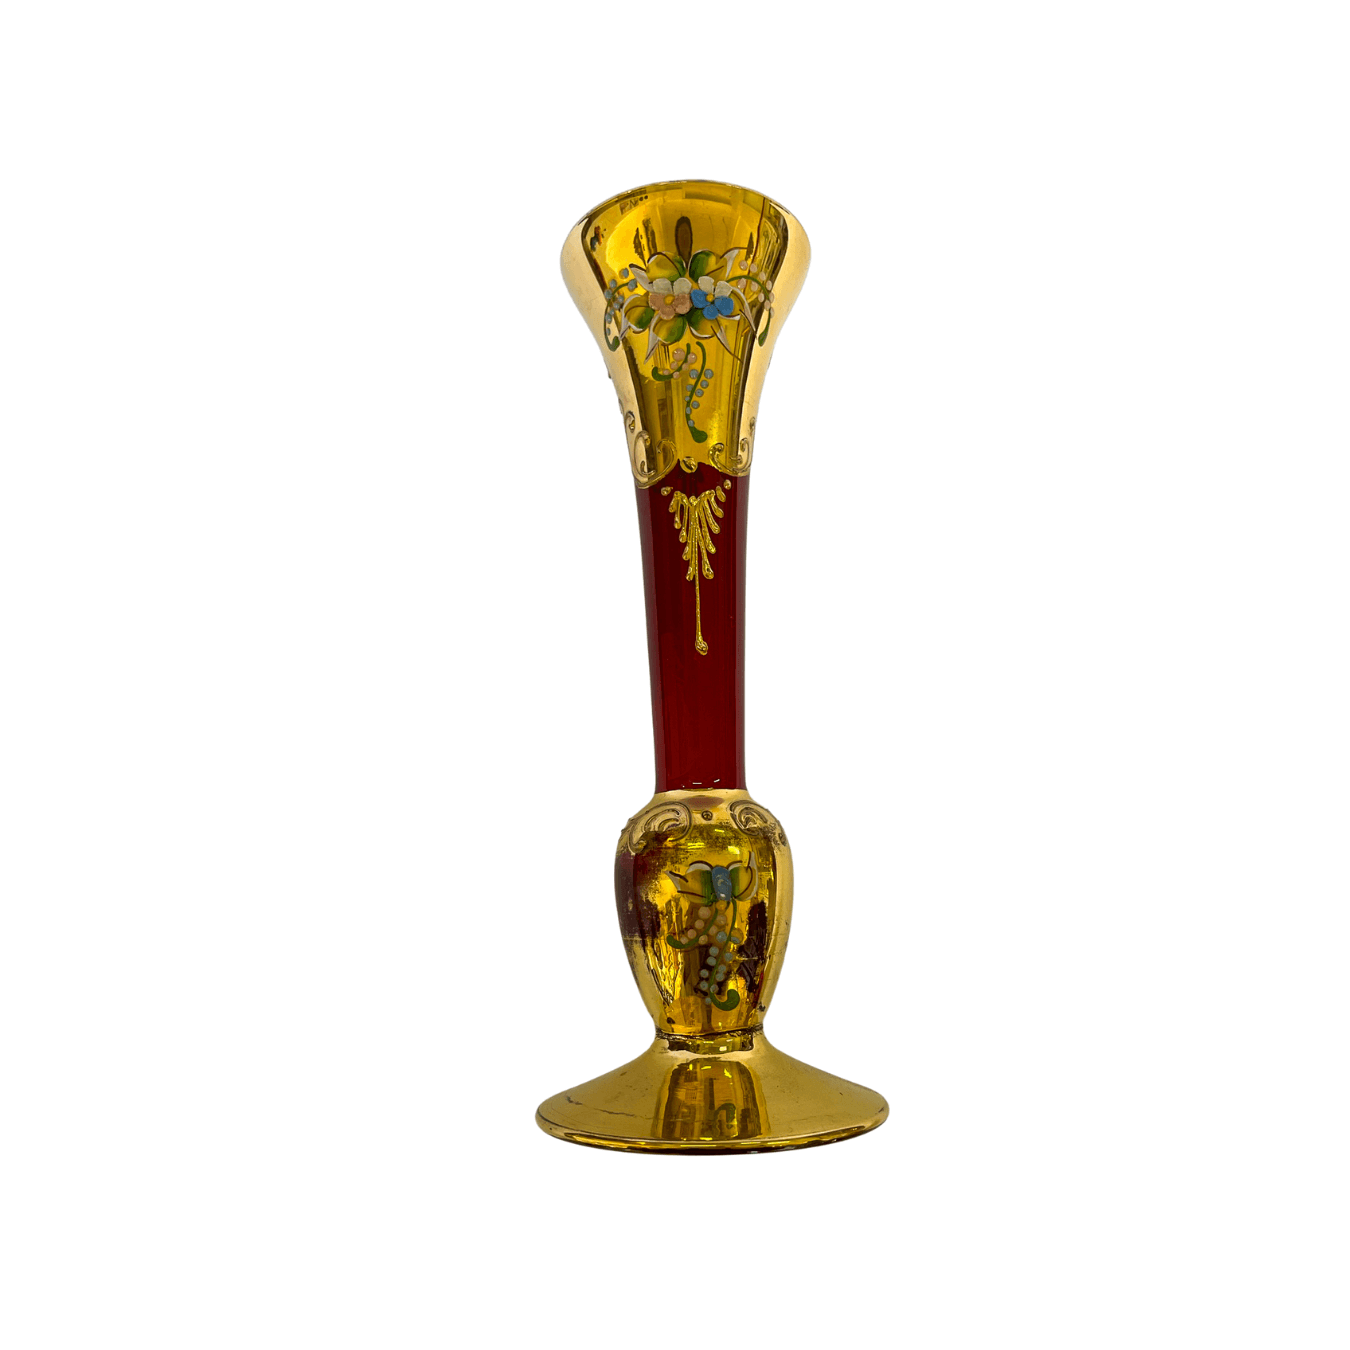 Vaso de Cristal Veneziano e Detalhes em Ouro